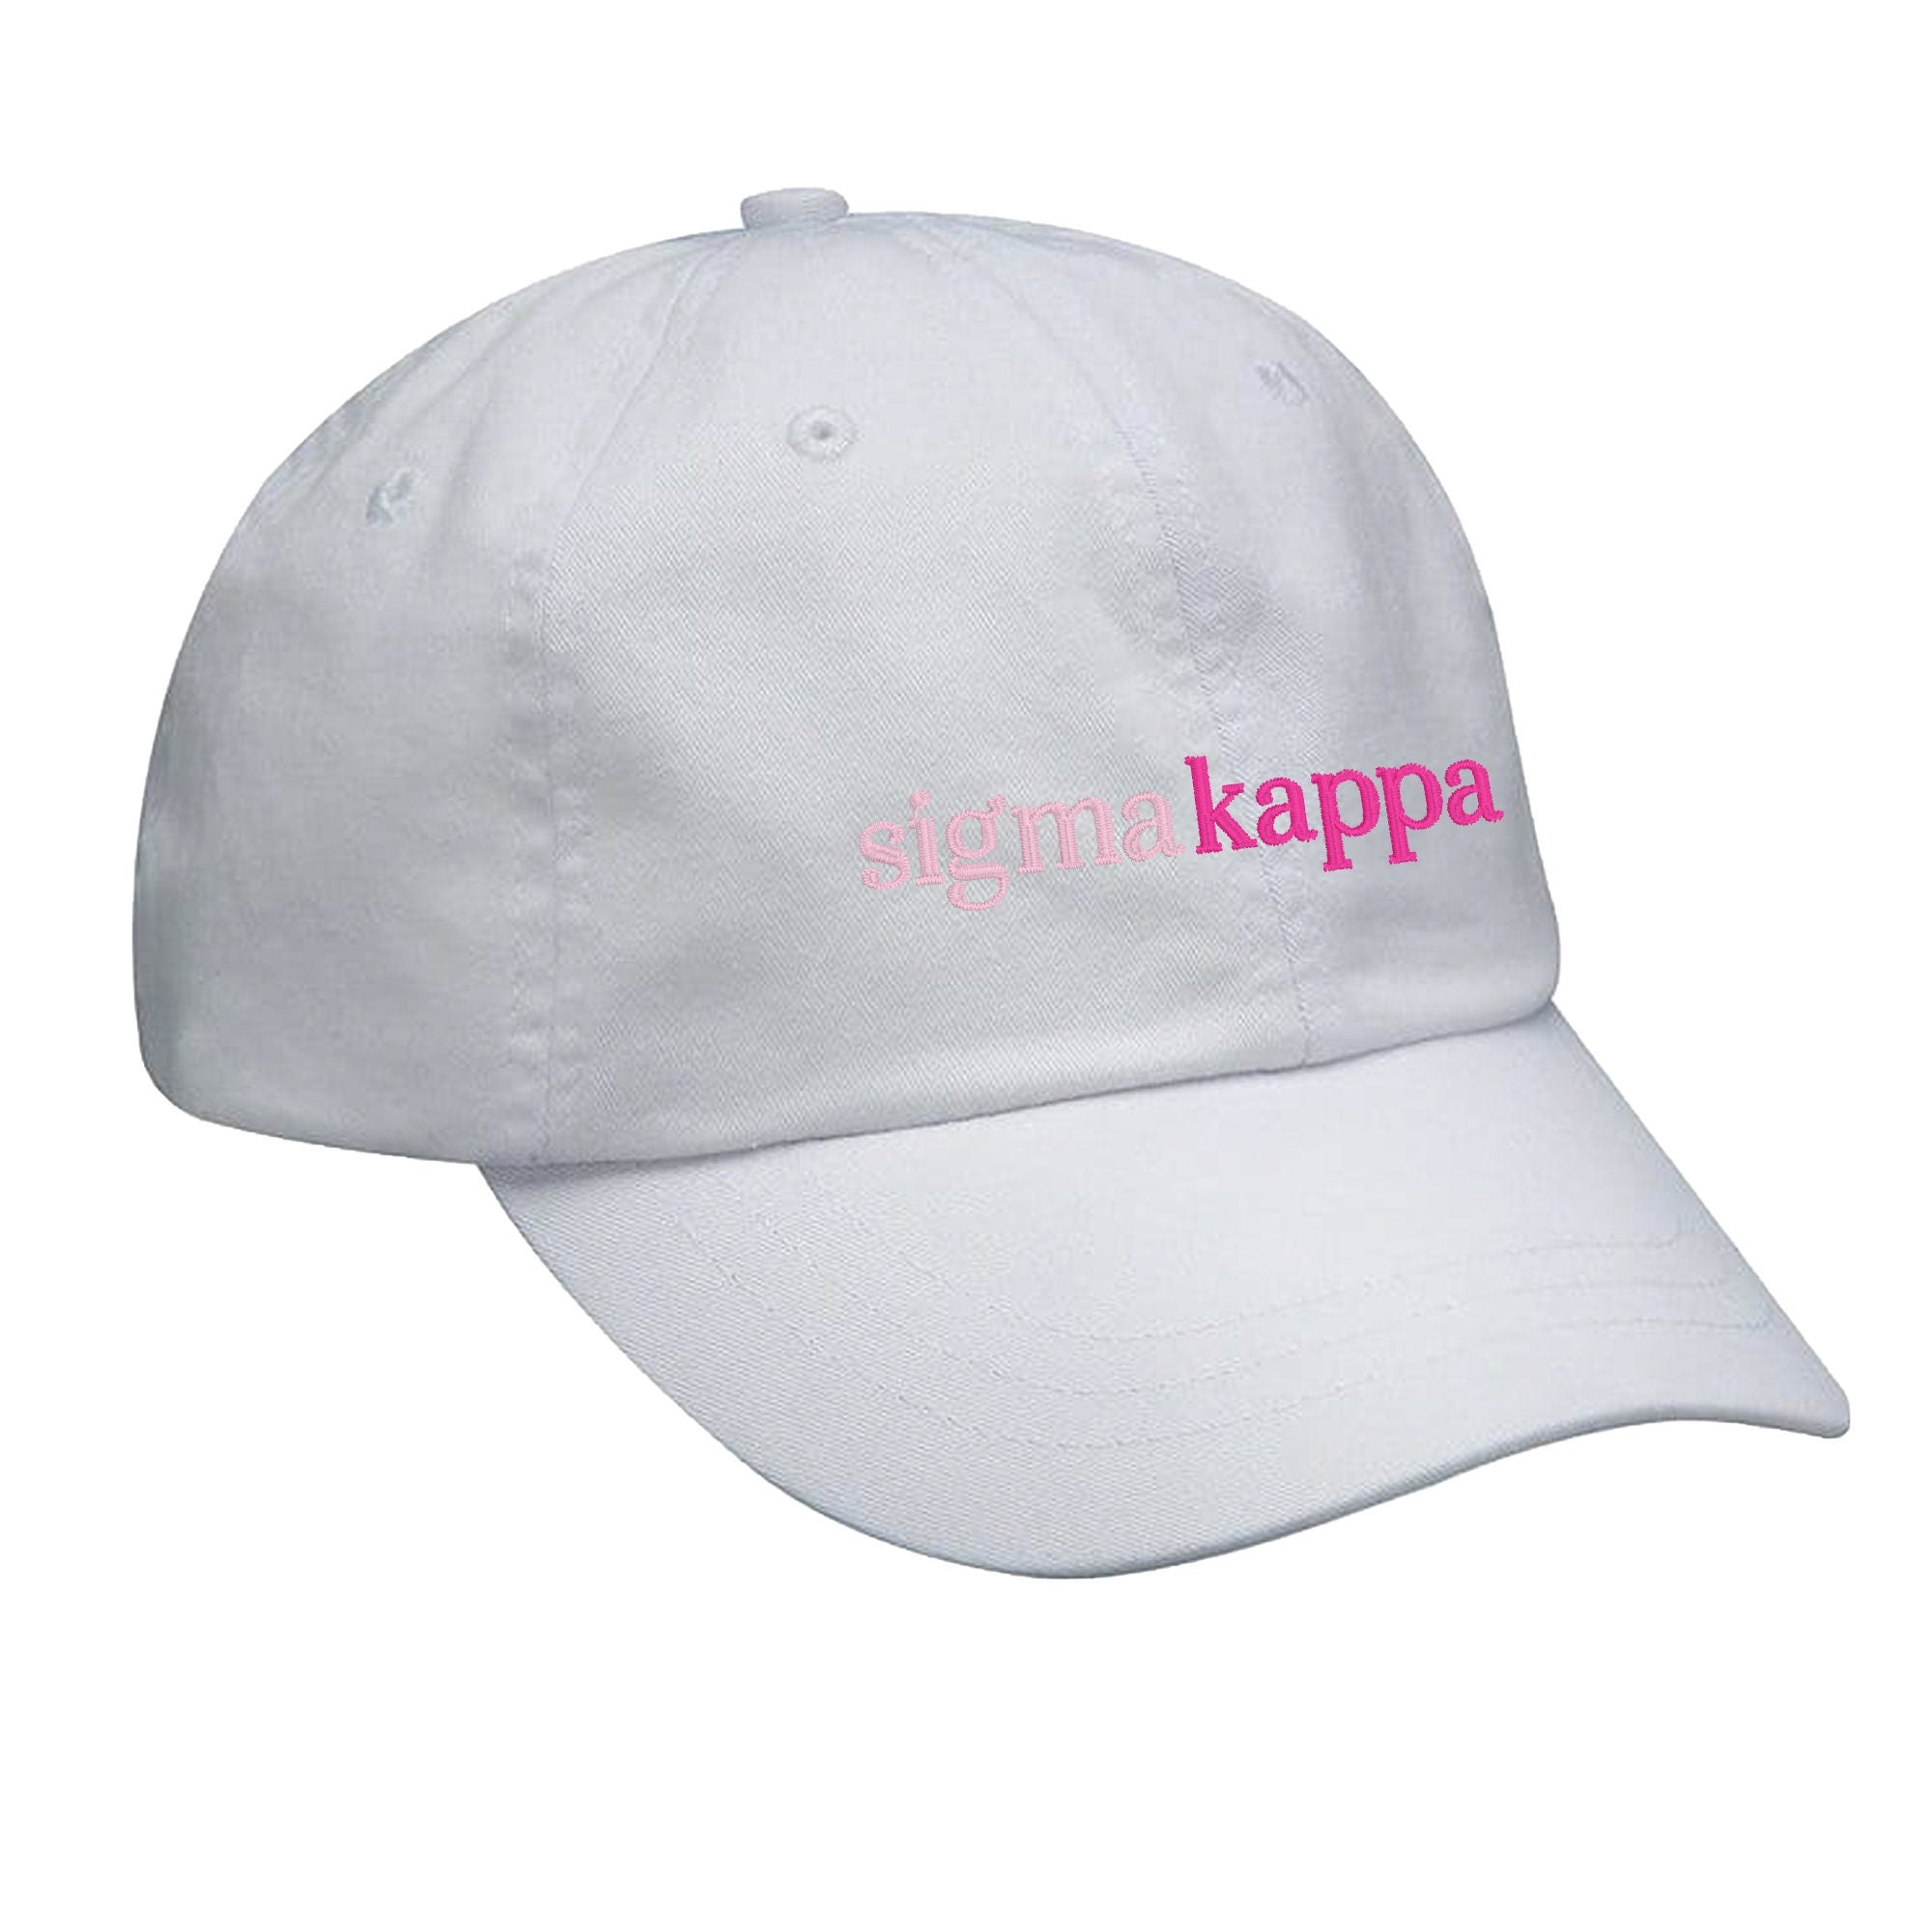 Kappa Kappa Gamma Hat - Pink Gradient – Go Greek Chic